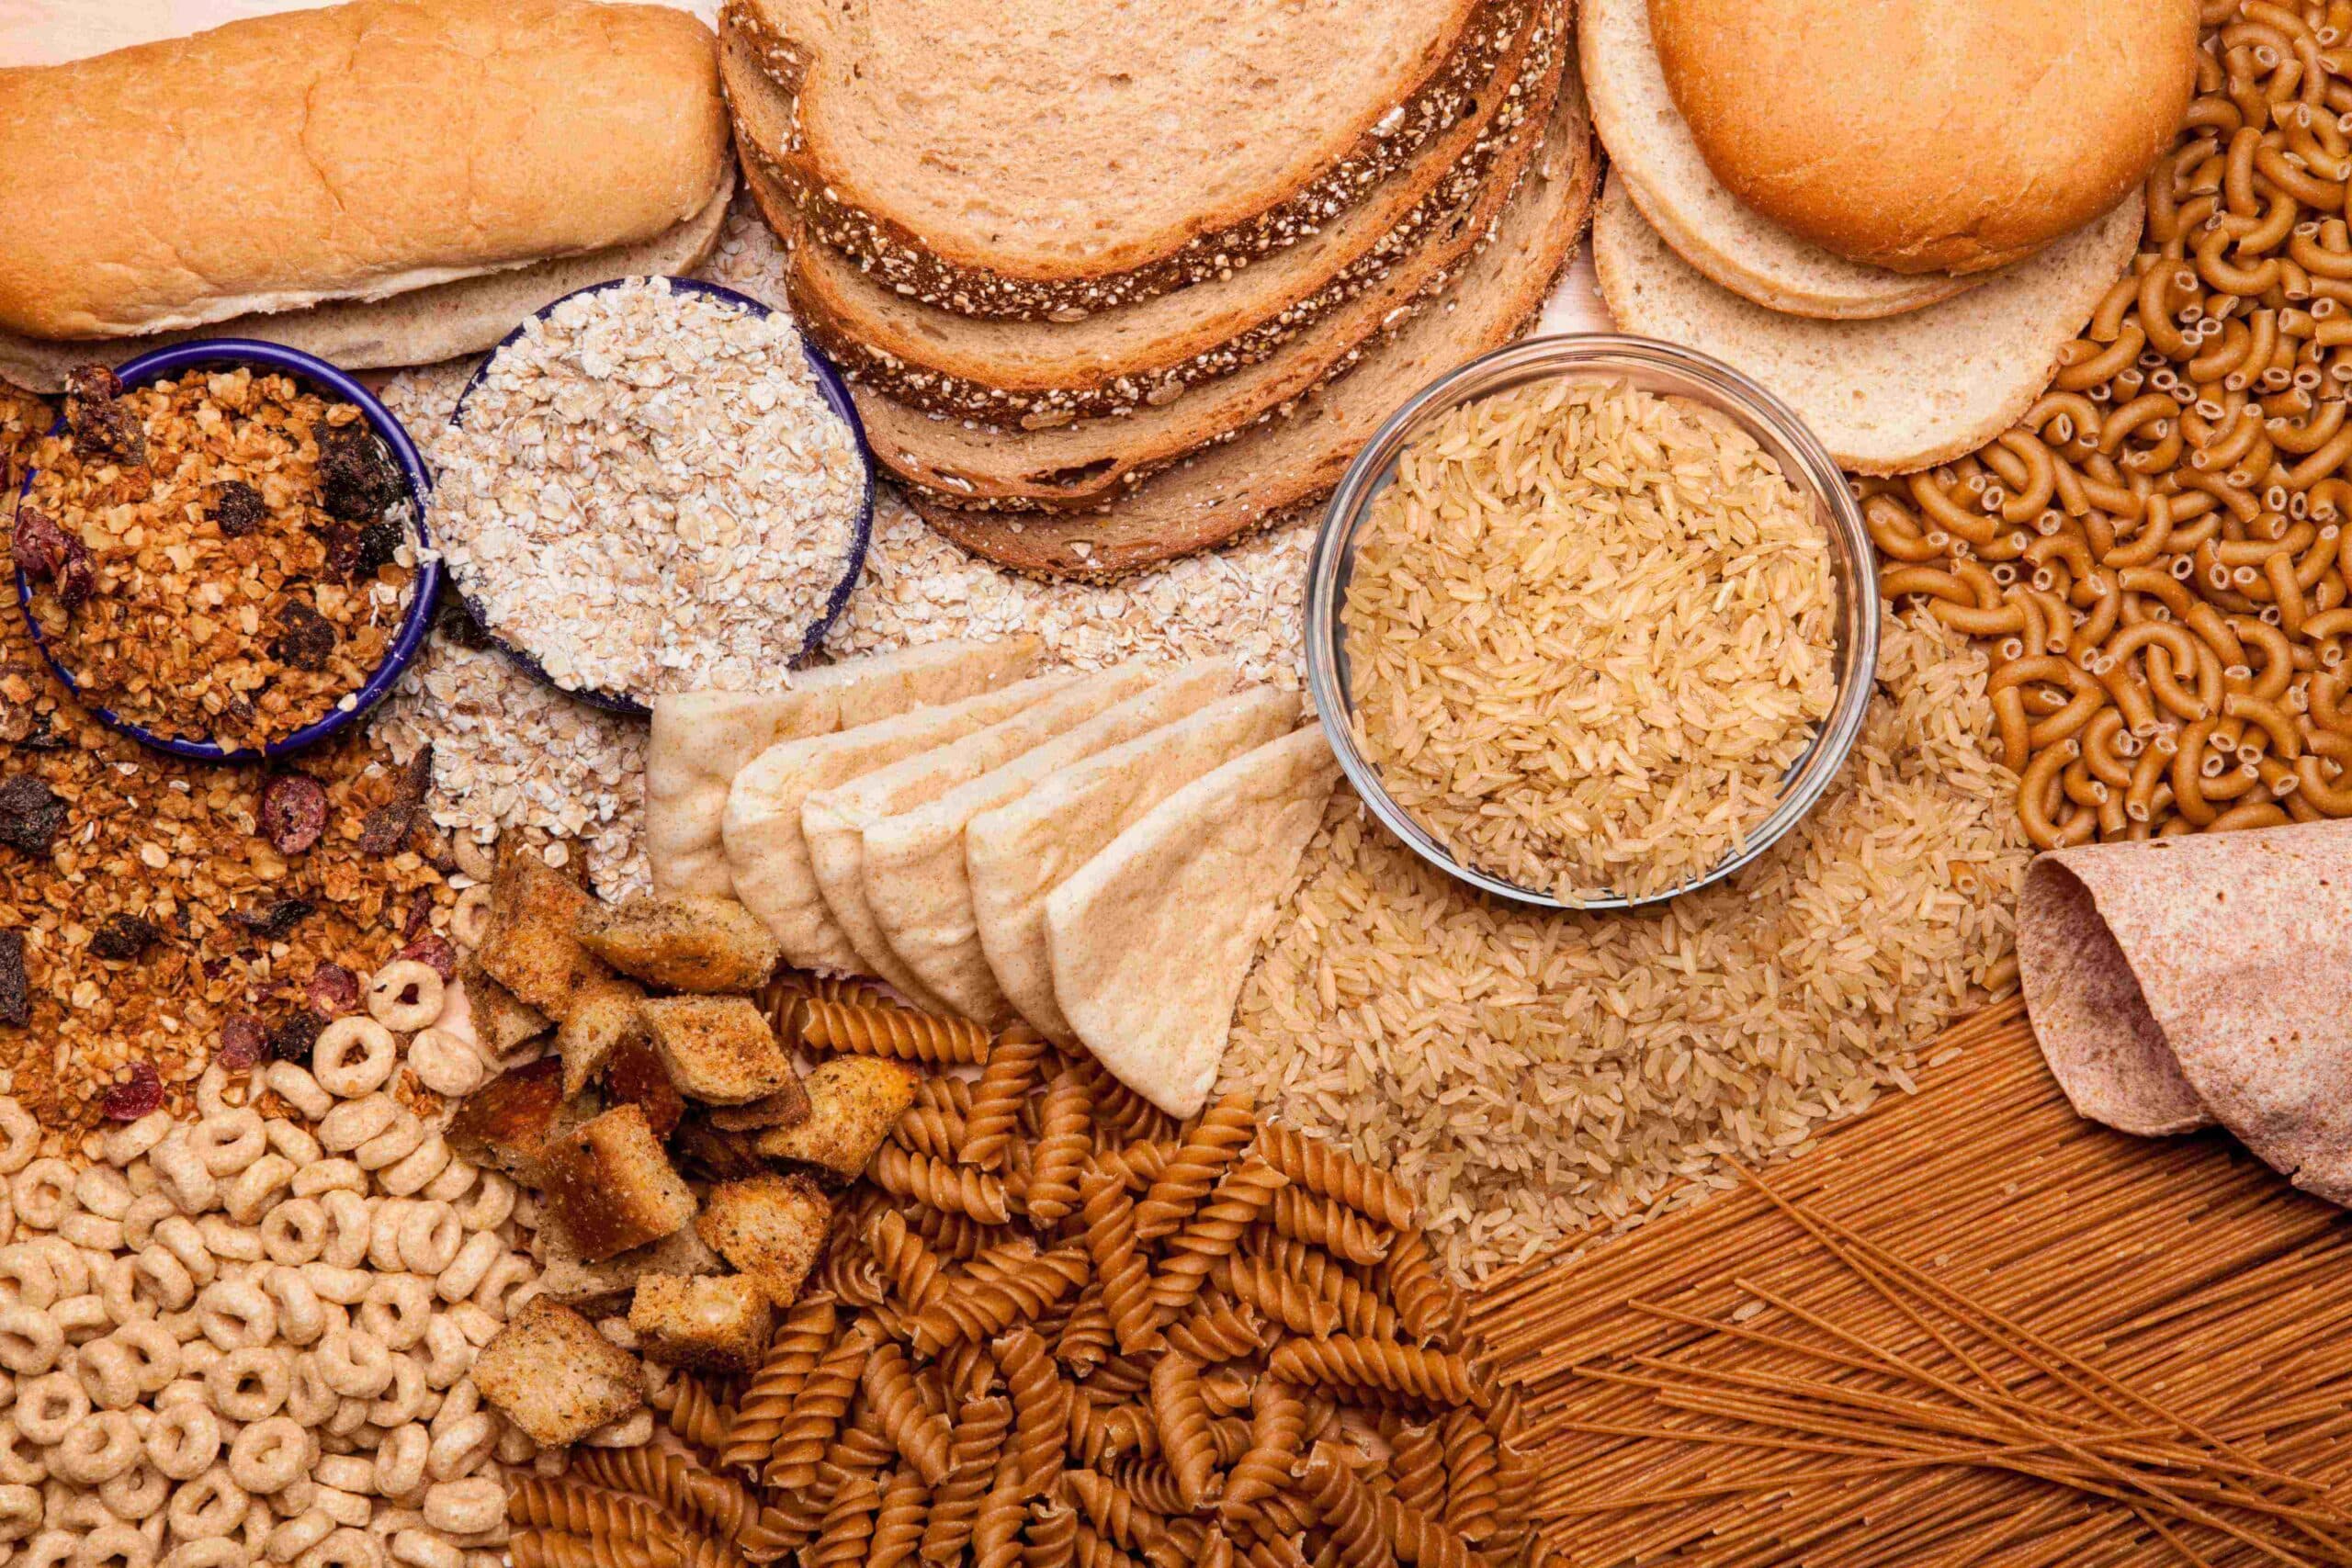 Food Face-off: Whole-wheat vs Multigrain Bread